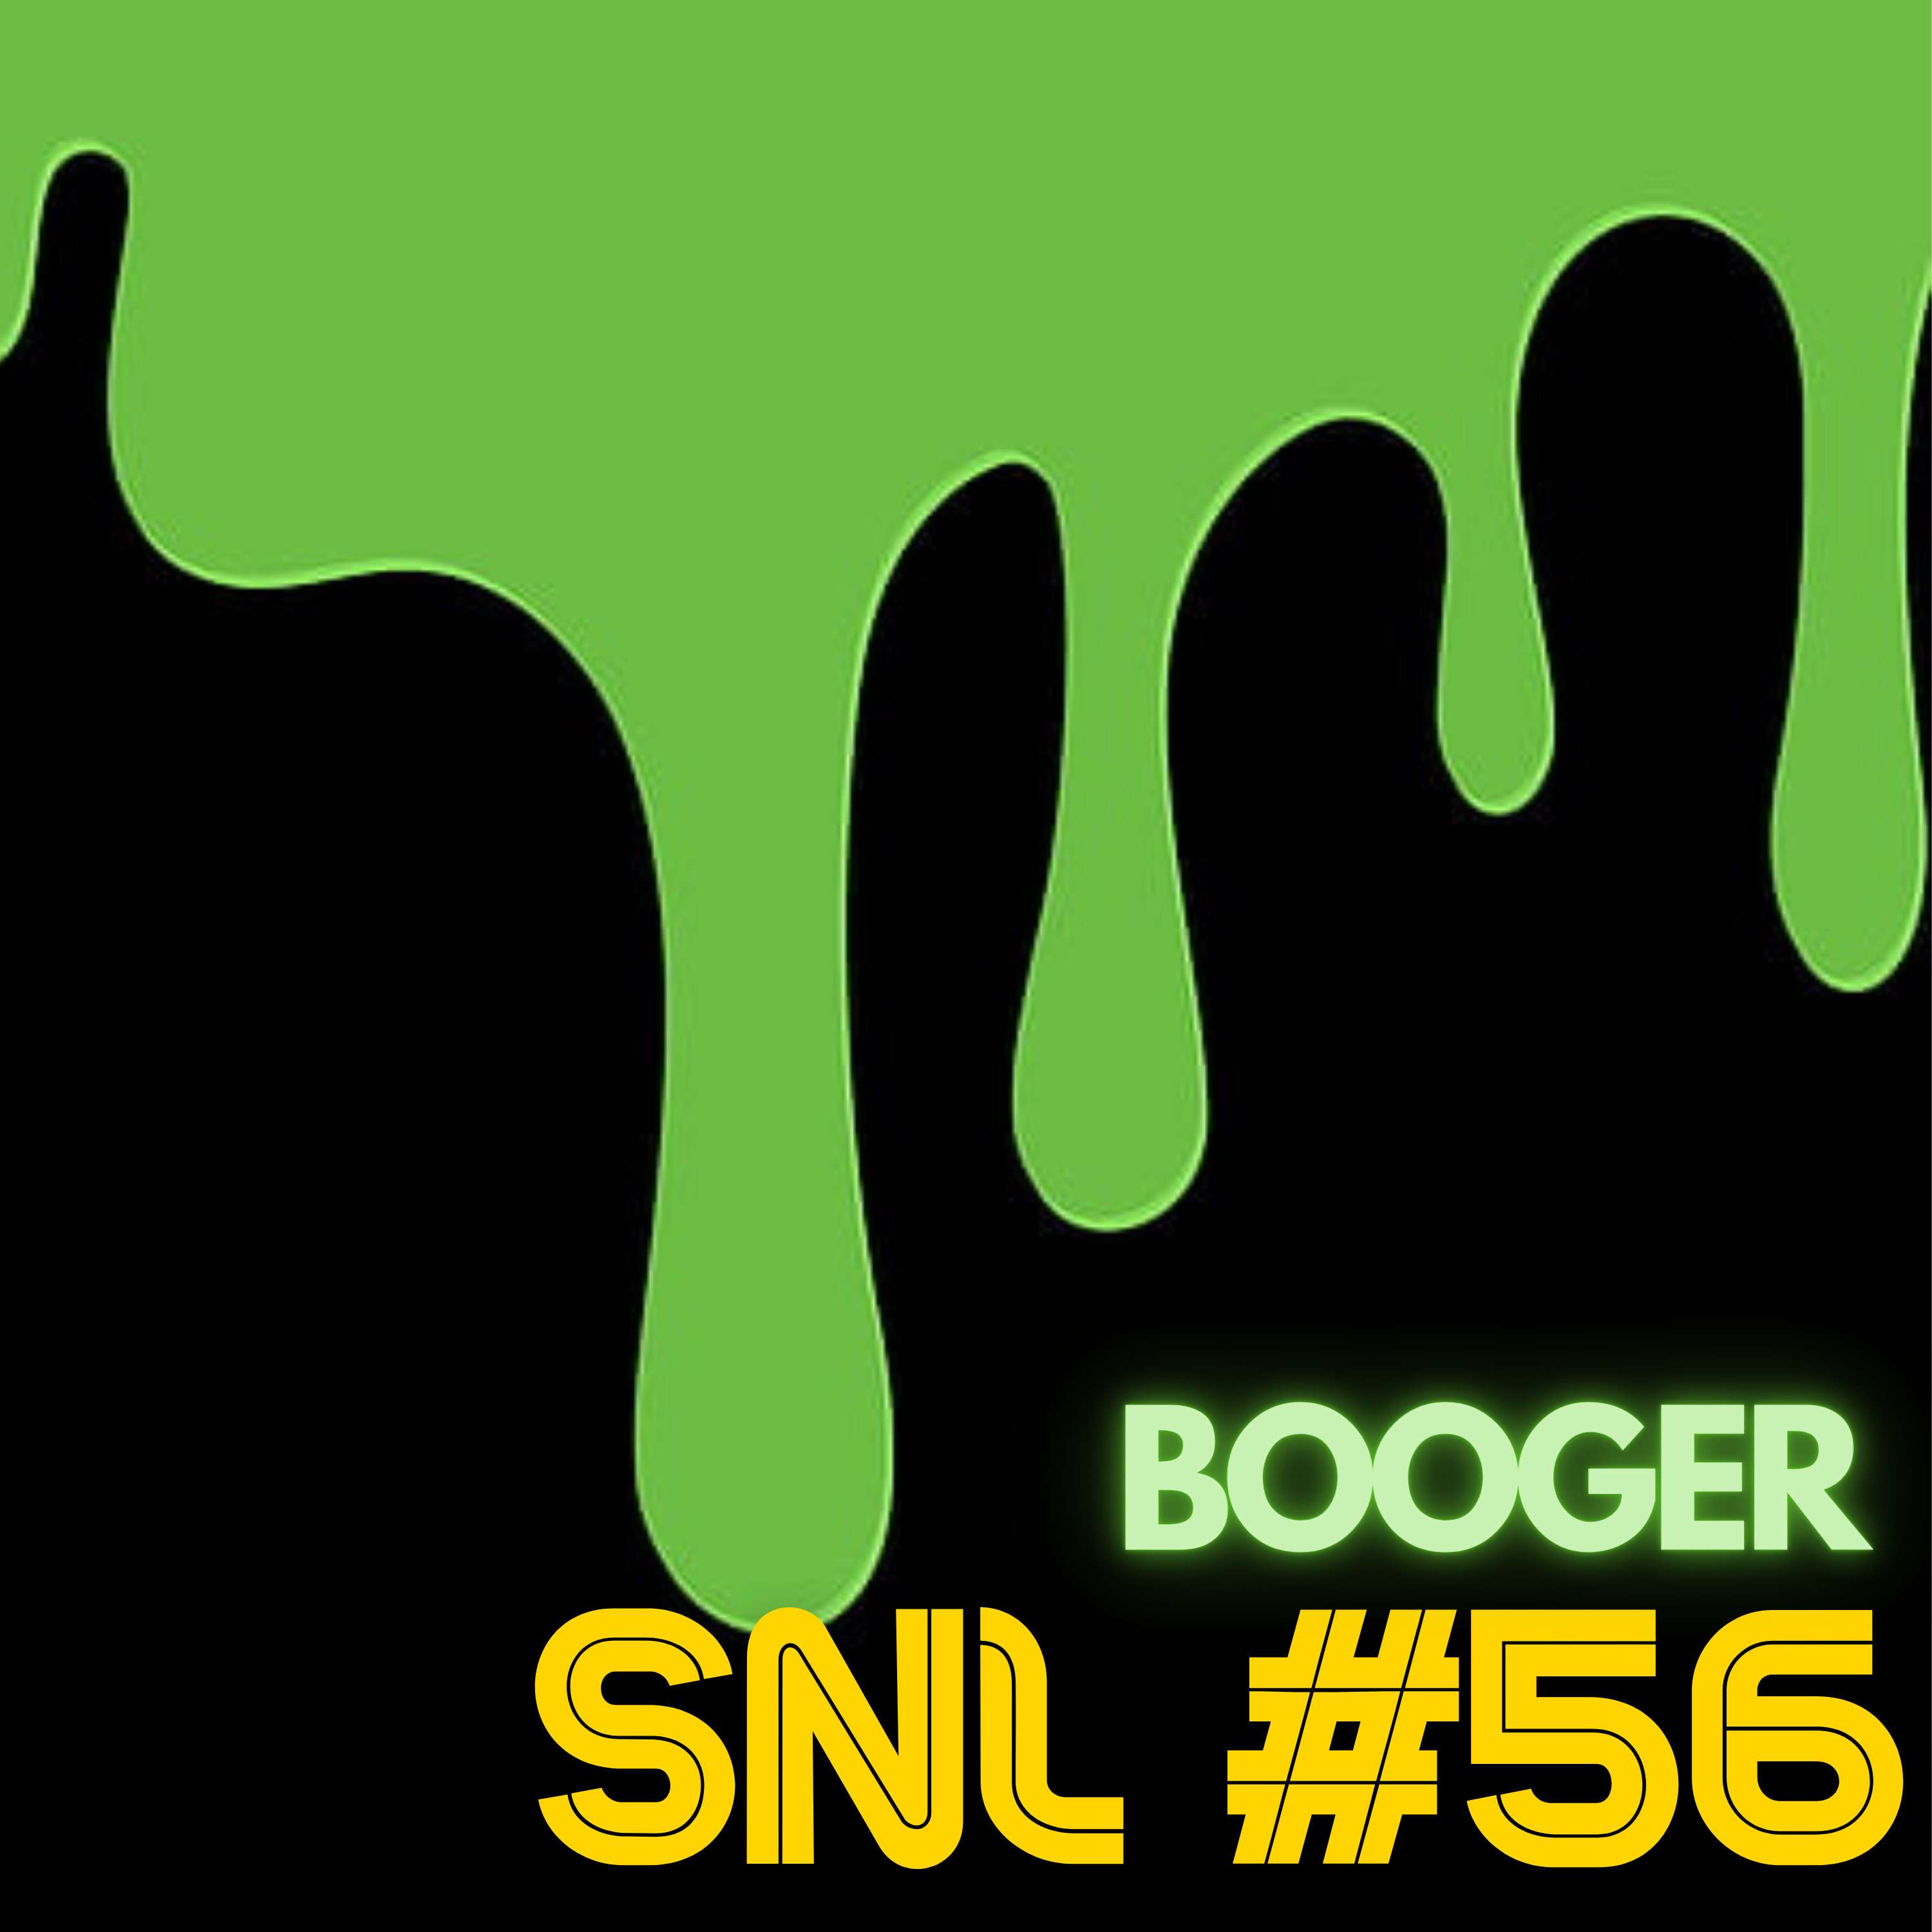 SNL #56: Booger 